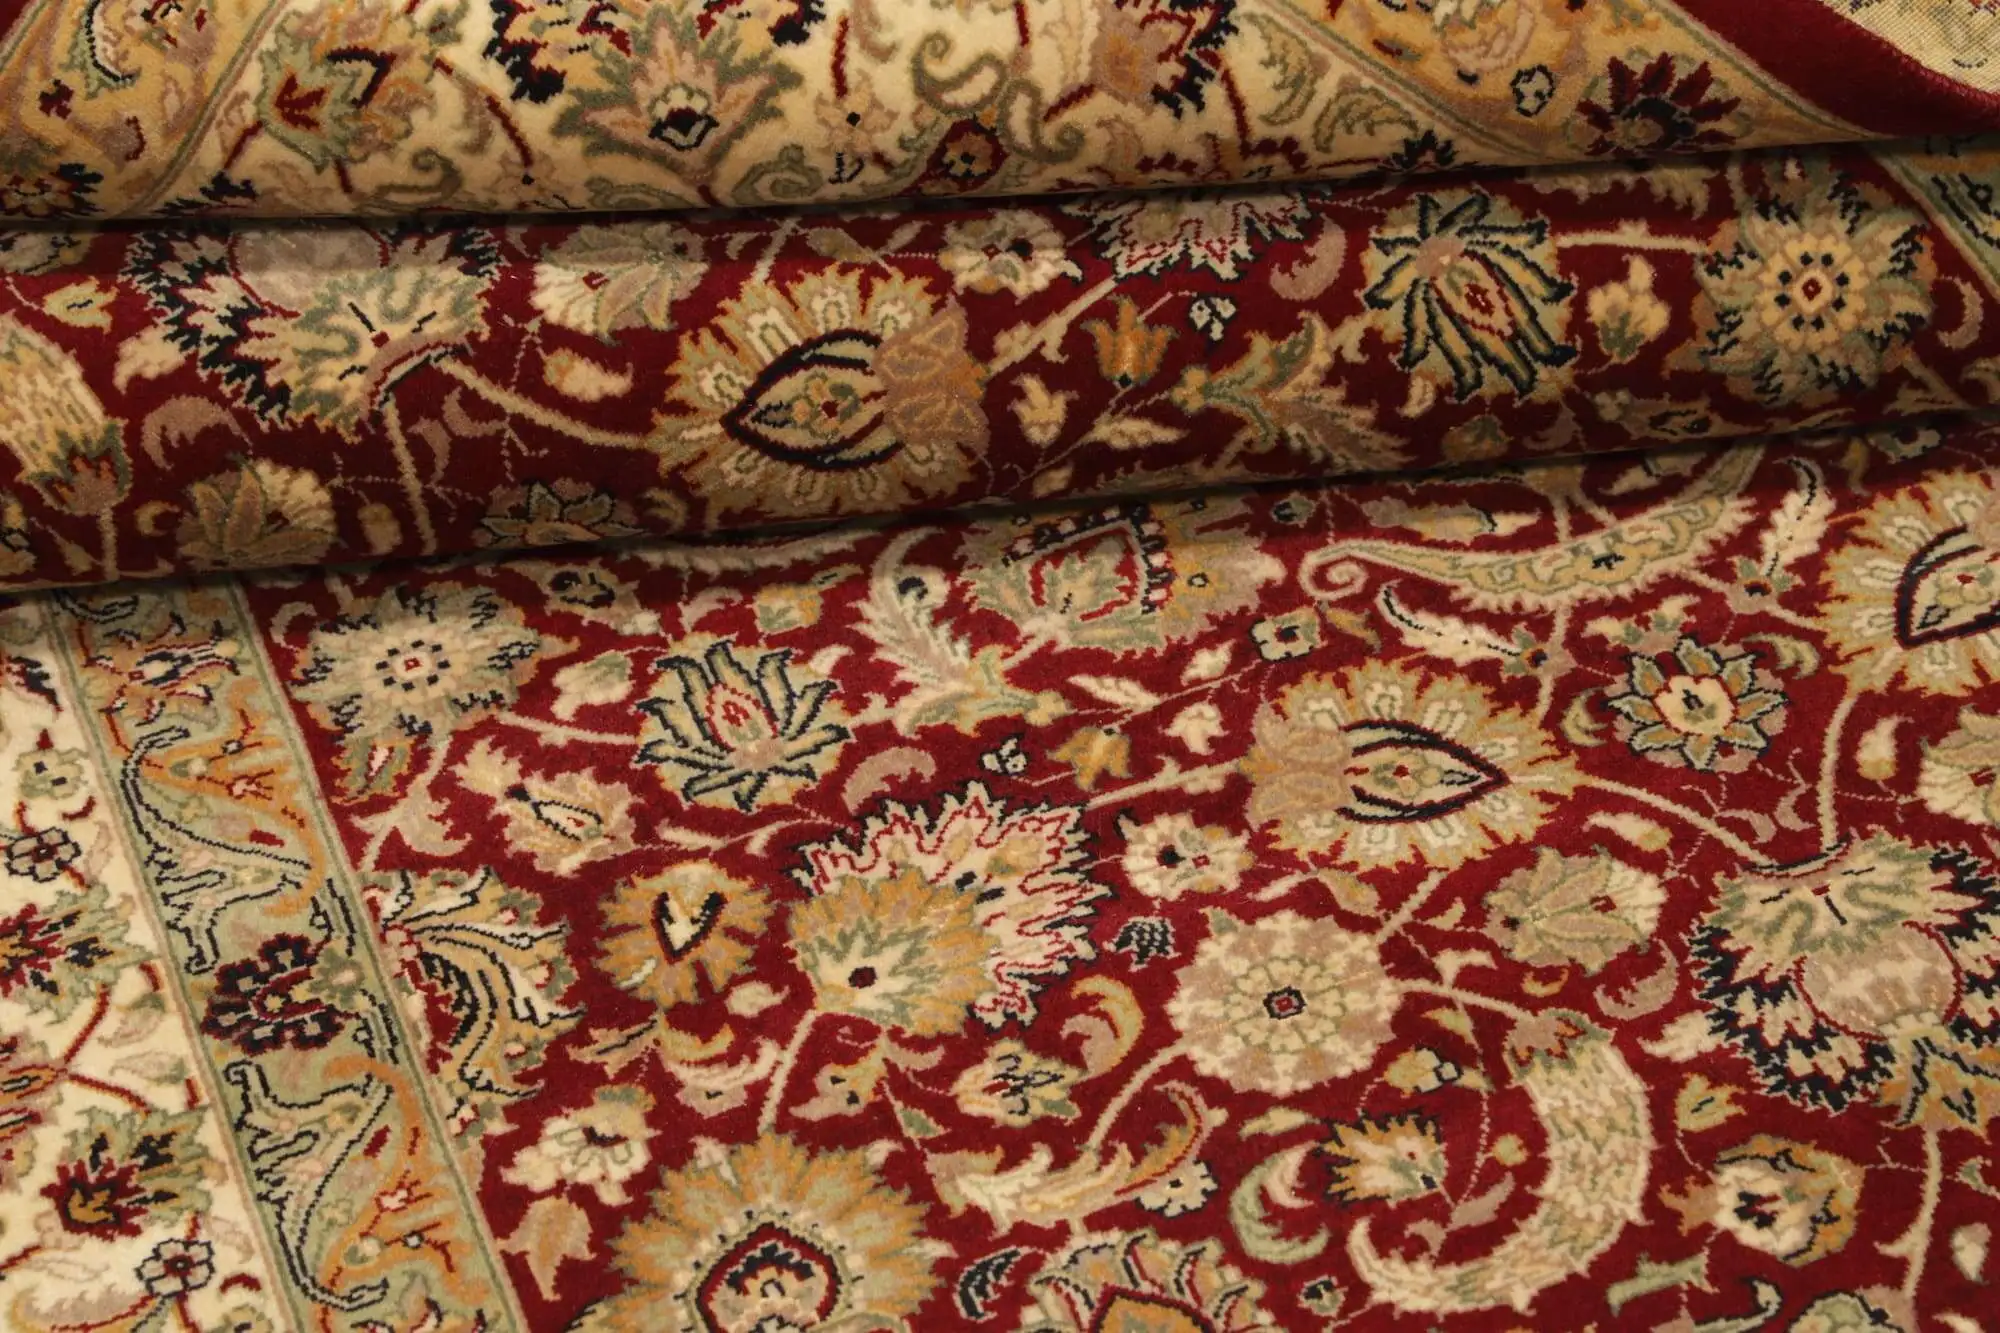 Die Teppichfarben werden je nach Blickwinkel unterschiedlich wahrgenommen.